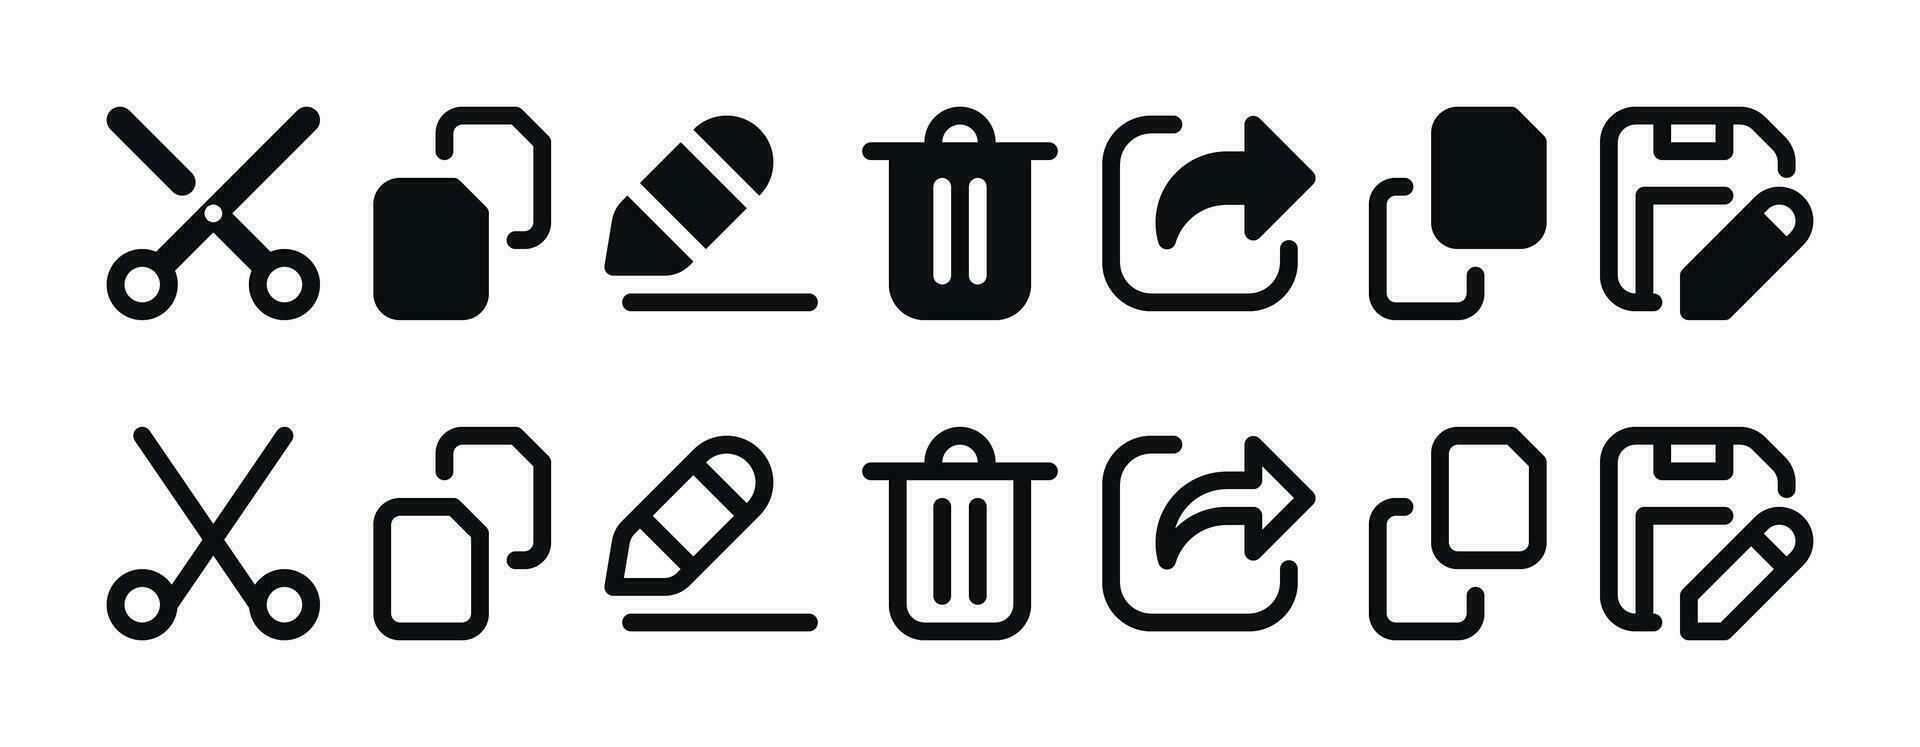 archivo gerente comportamiento icono conjunto - basura poder, salvar como, Copiar, pegar, rebautizar, cortar símbolos vector